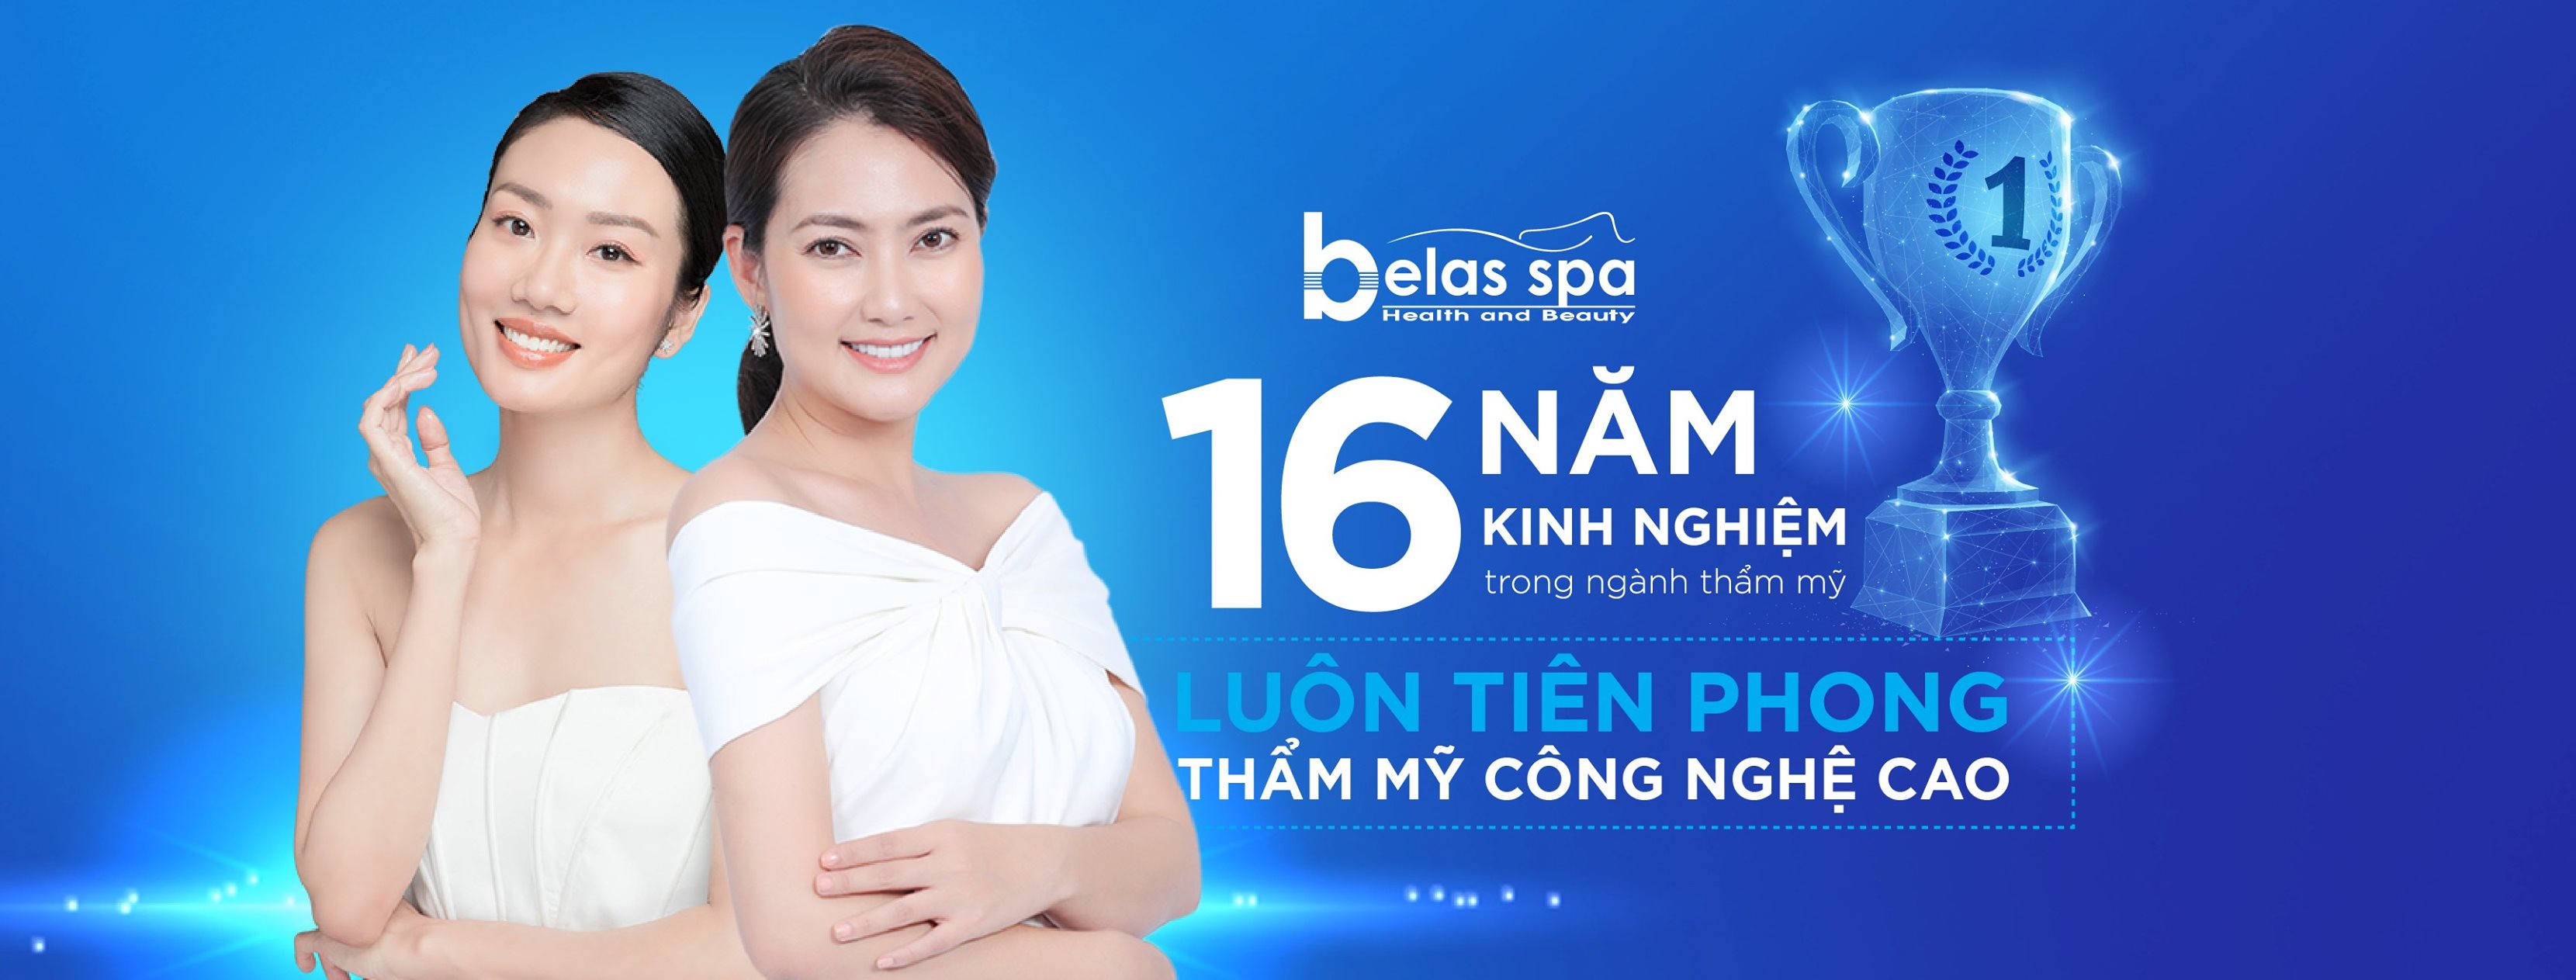 Top 8 Spa uy tín và chất lượng nhất tại Đà Nẵng -  Belas Spa